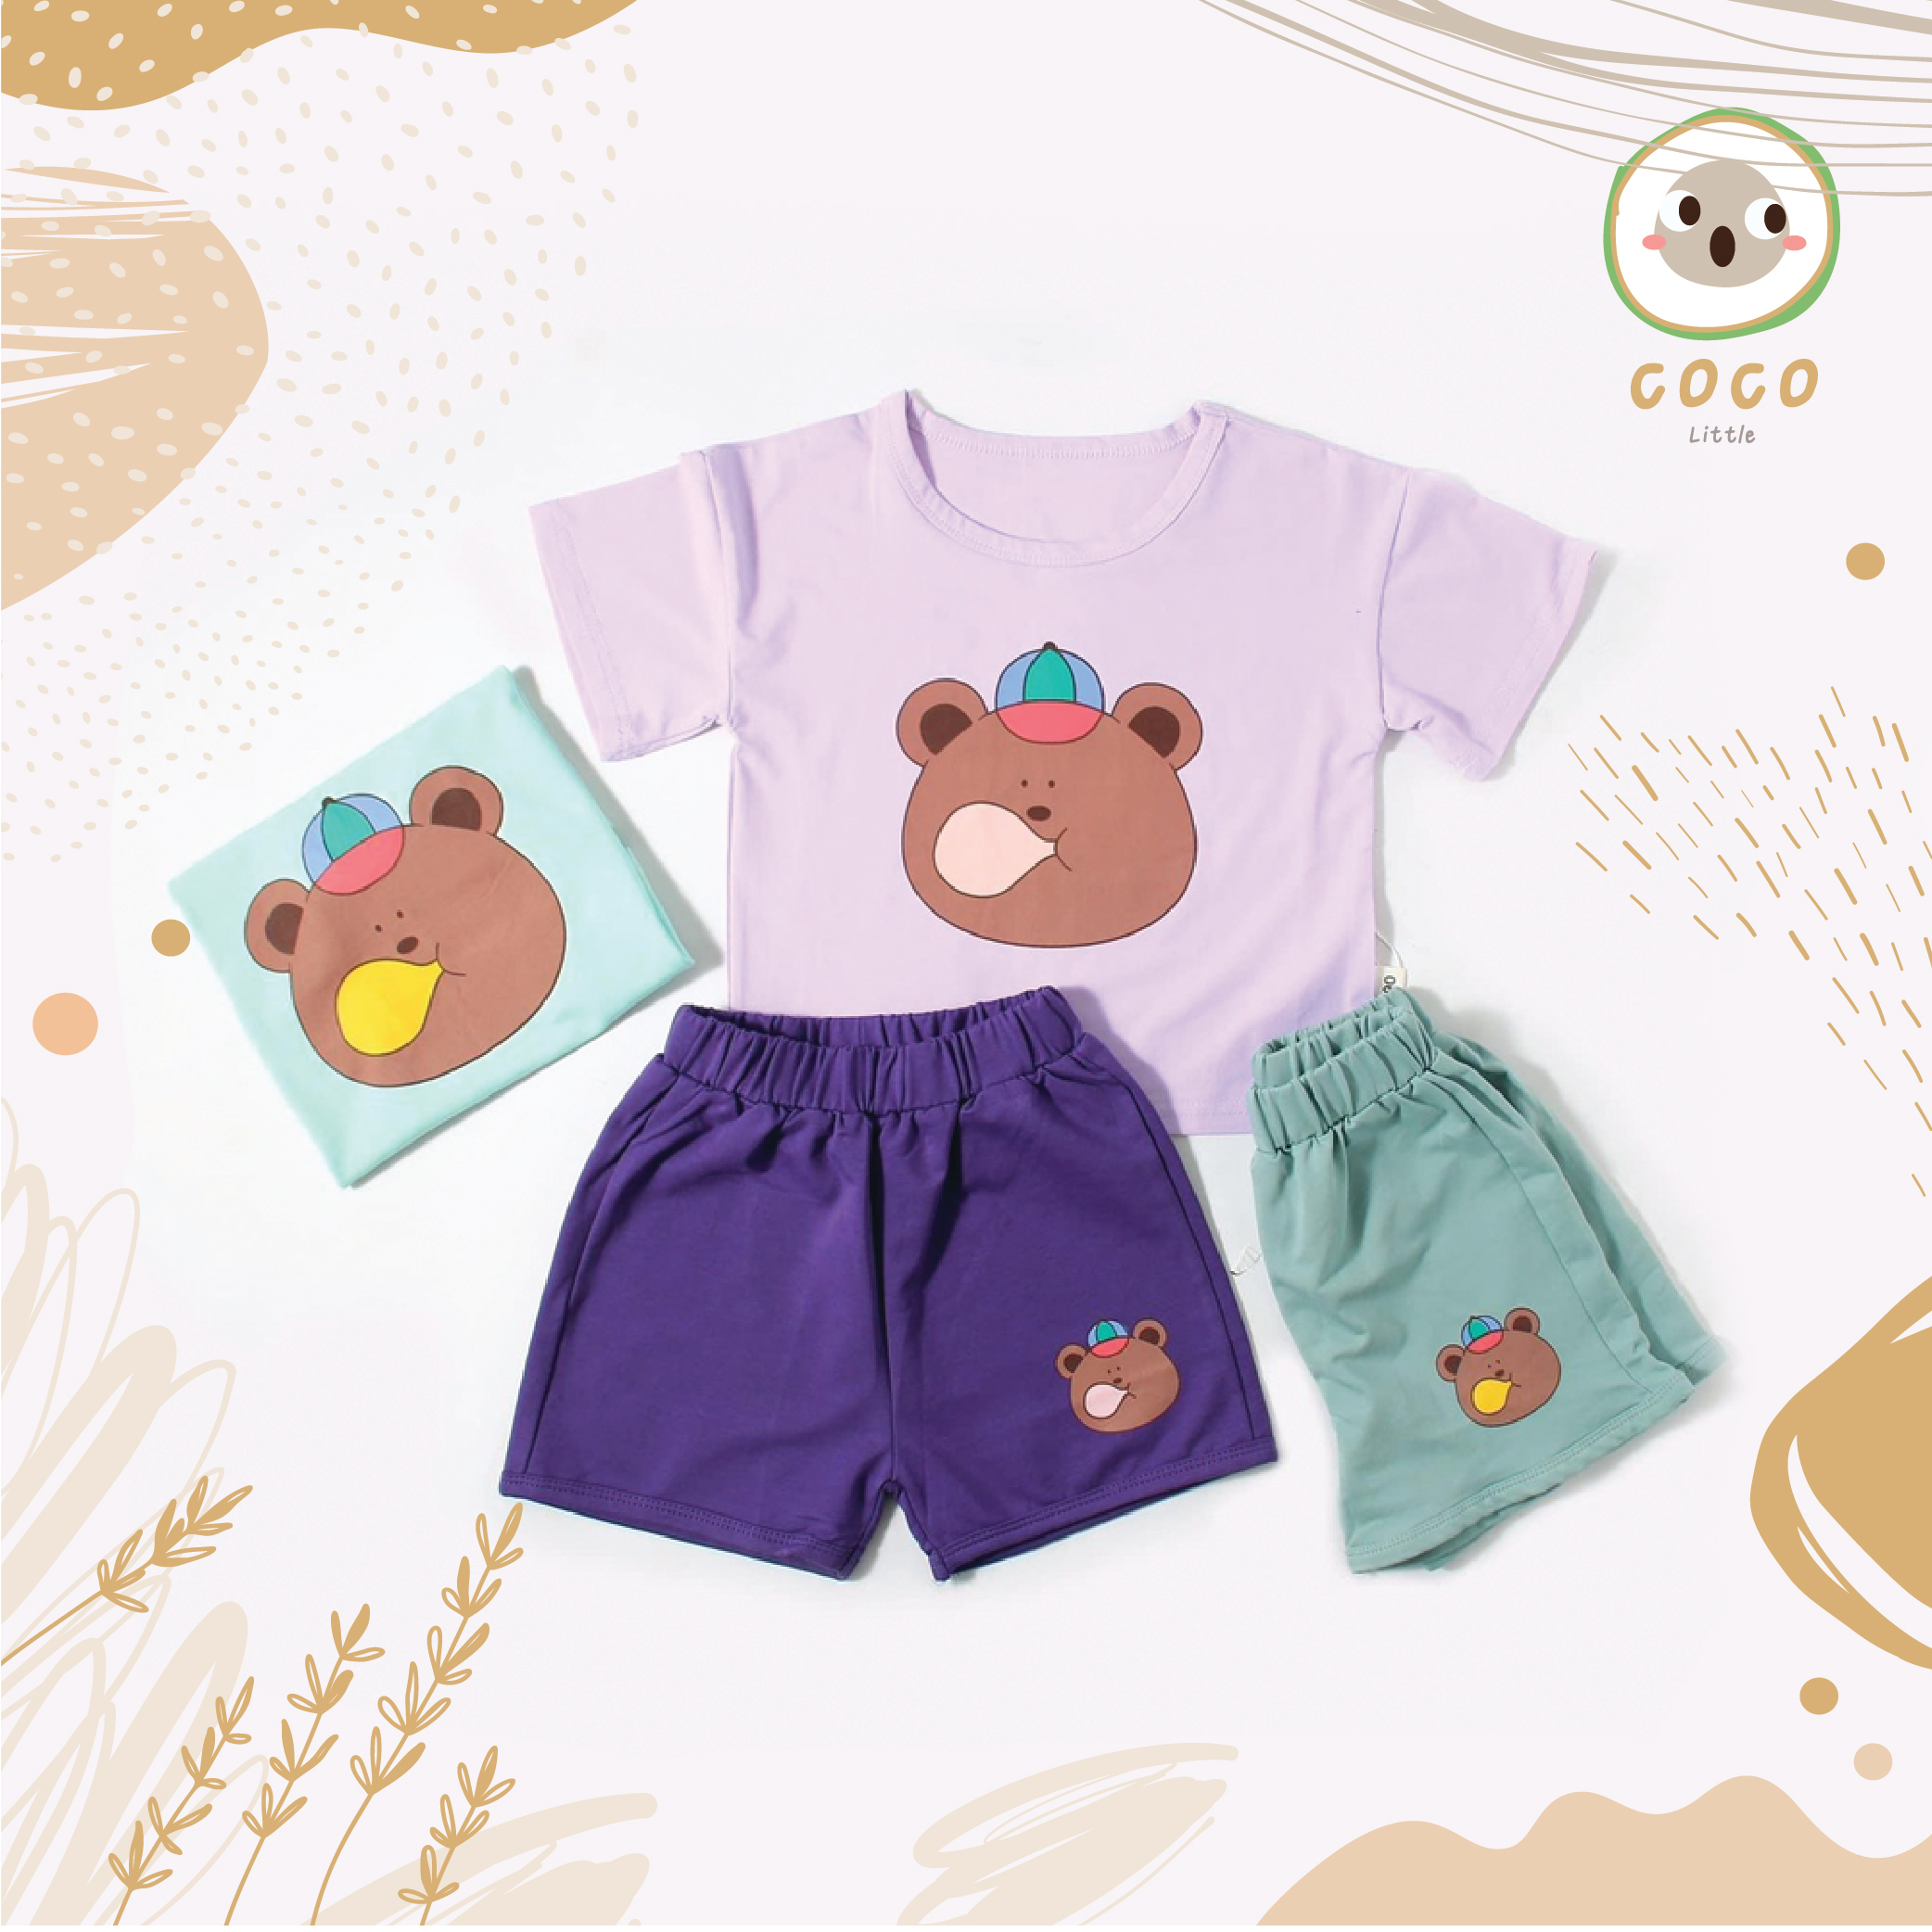 COCO BY PAPABABY ชุดเซทเด็ก แขนสั้น เสื้อ+กางเกงลายน้องหมี เสื้อผ้าแฟชั่นเด็ก ชุดฤดูร้อน ใส่ได้ทุกโอกาส นิ่มใส่สบาย